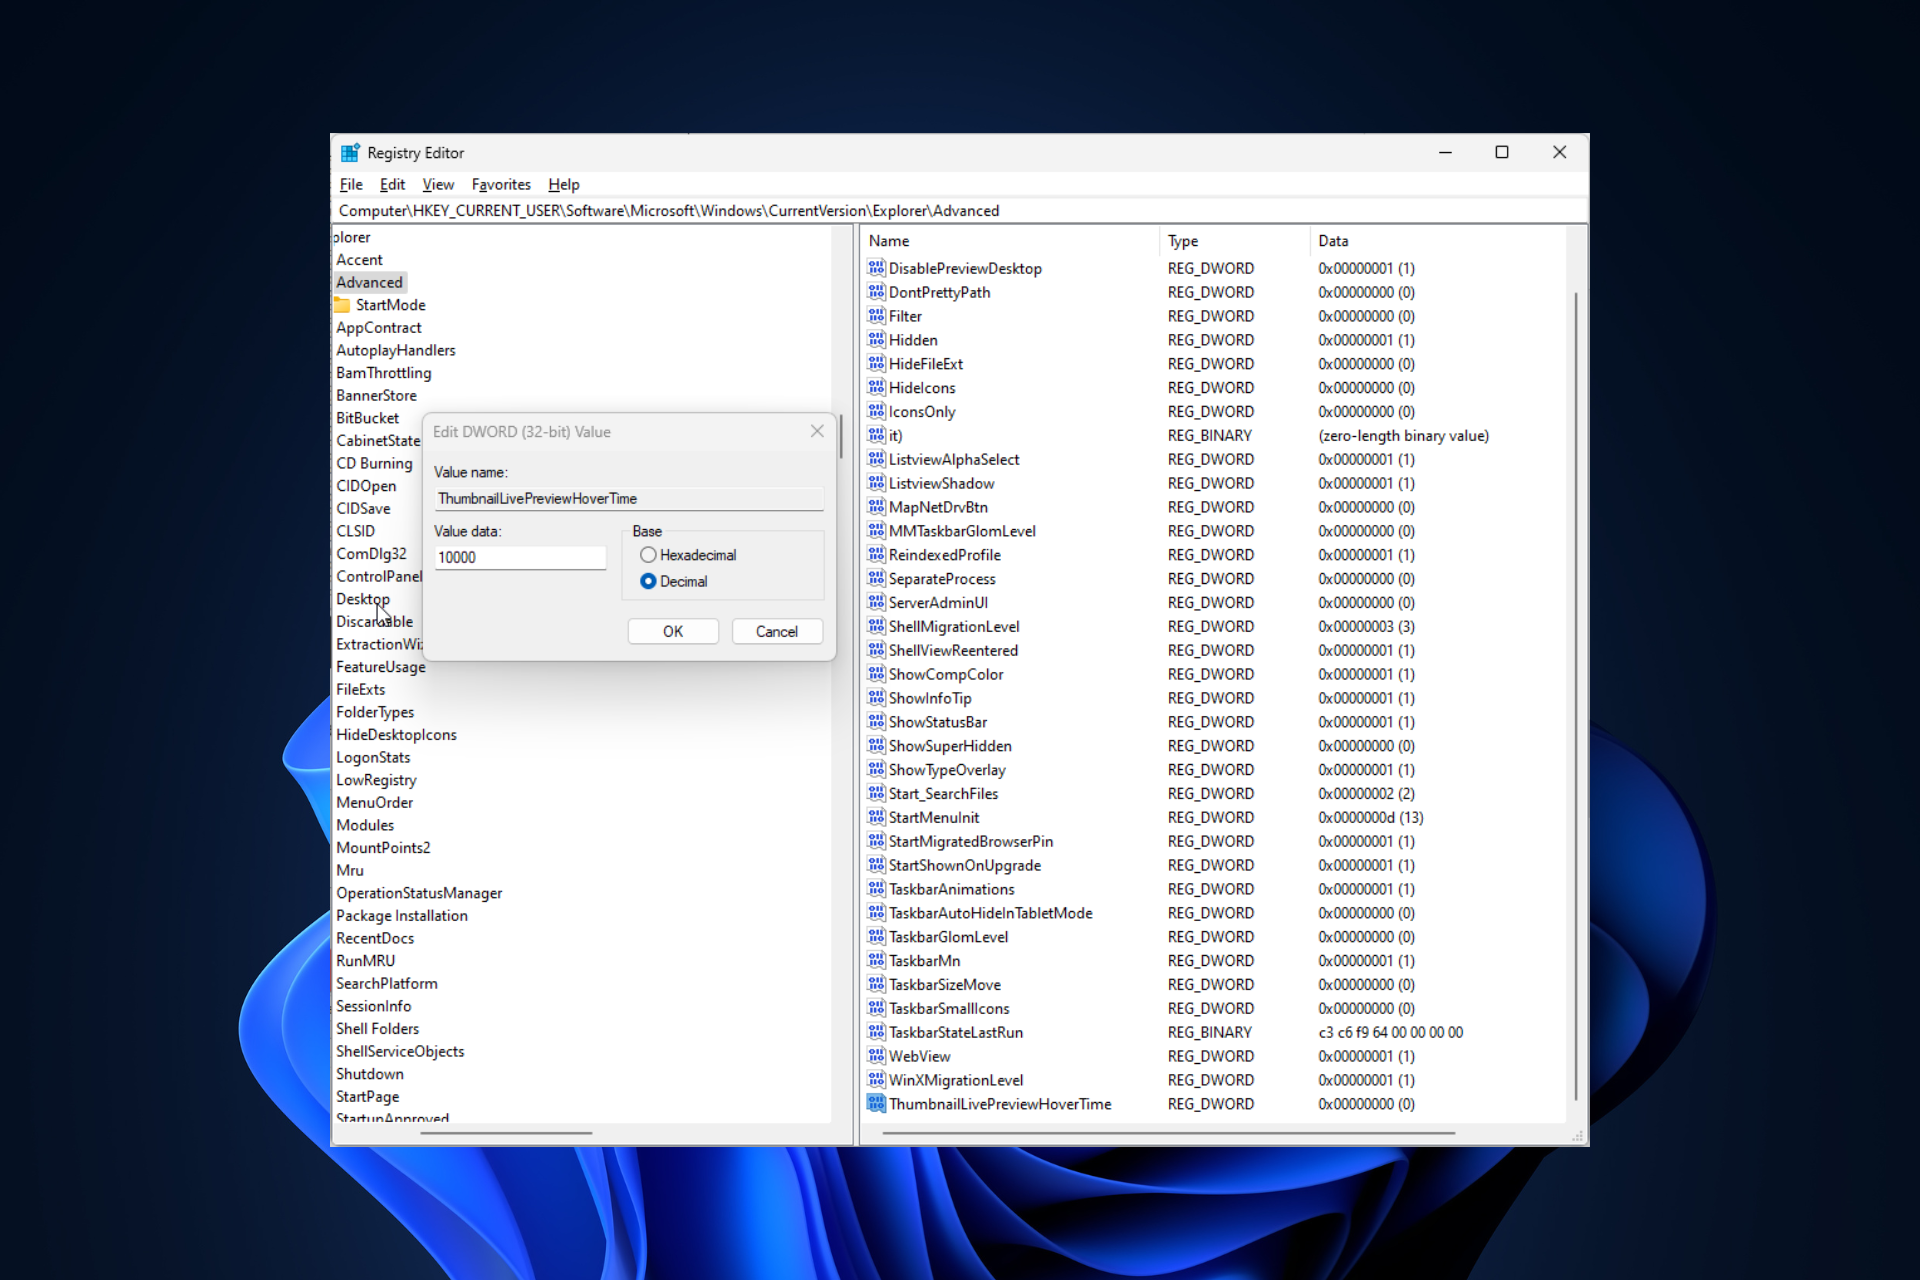 La vista previa en miniatura de la barra de tareas desaparece demasiado rápido en Windows 11